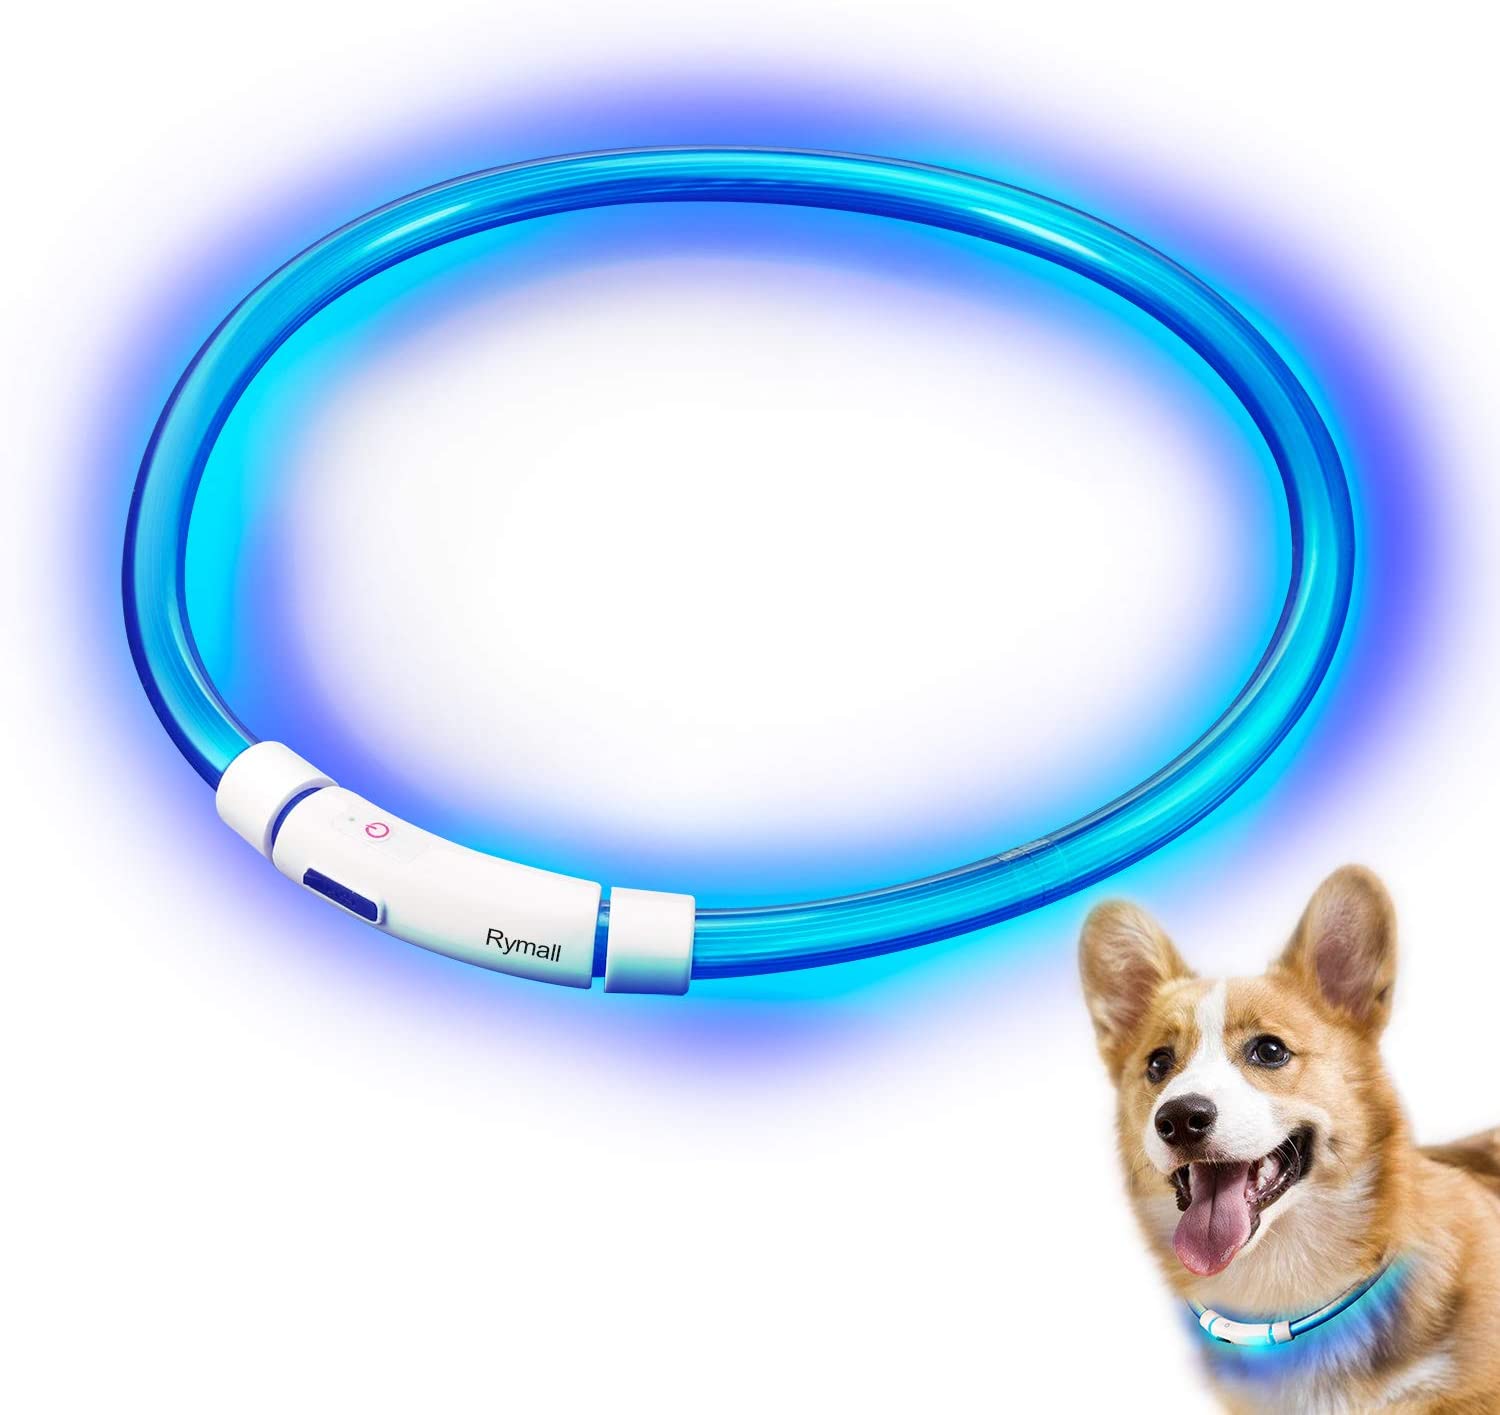  Collar para Perros, Collar de Seguridad para Perros, Rymall collar adiestramiento USB ajustable recargable impermeable LED parpadea luz Collar del animal doméstico, azul 